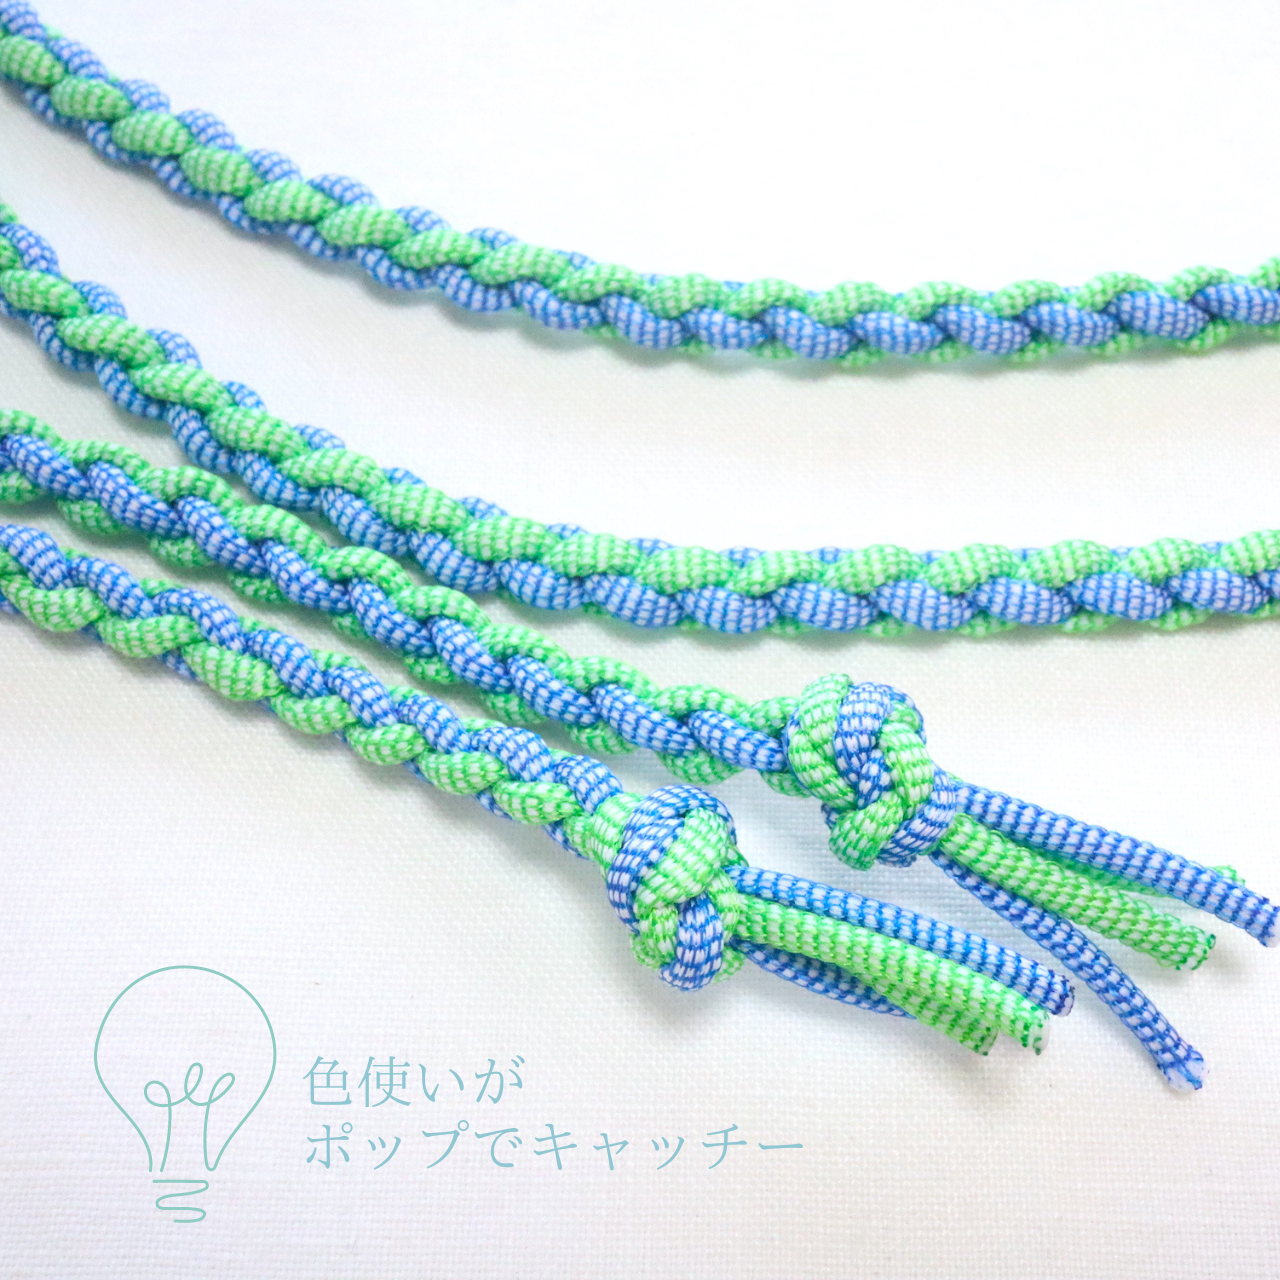 【帯締め】【組紐】新感覚!!! アパレル商材のソフトタッチな紐を使った 四つ編み帯締め